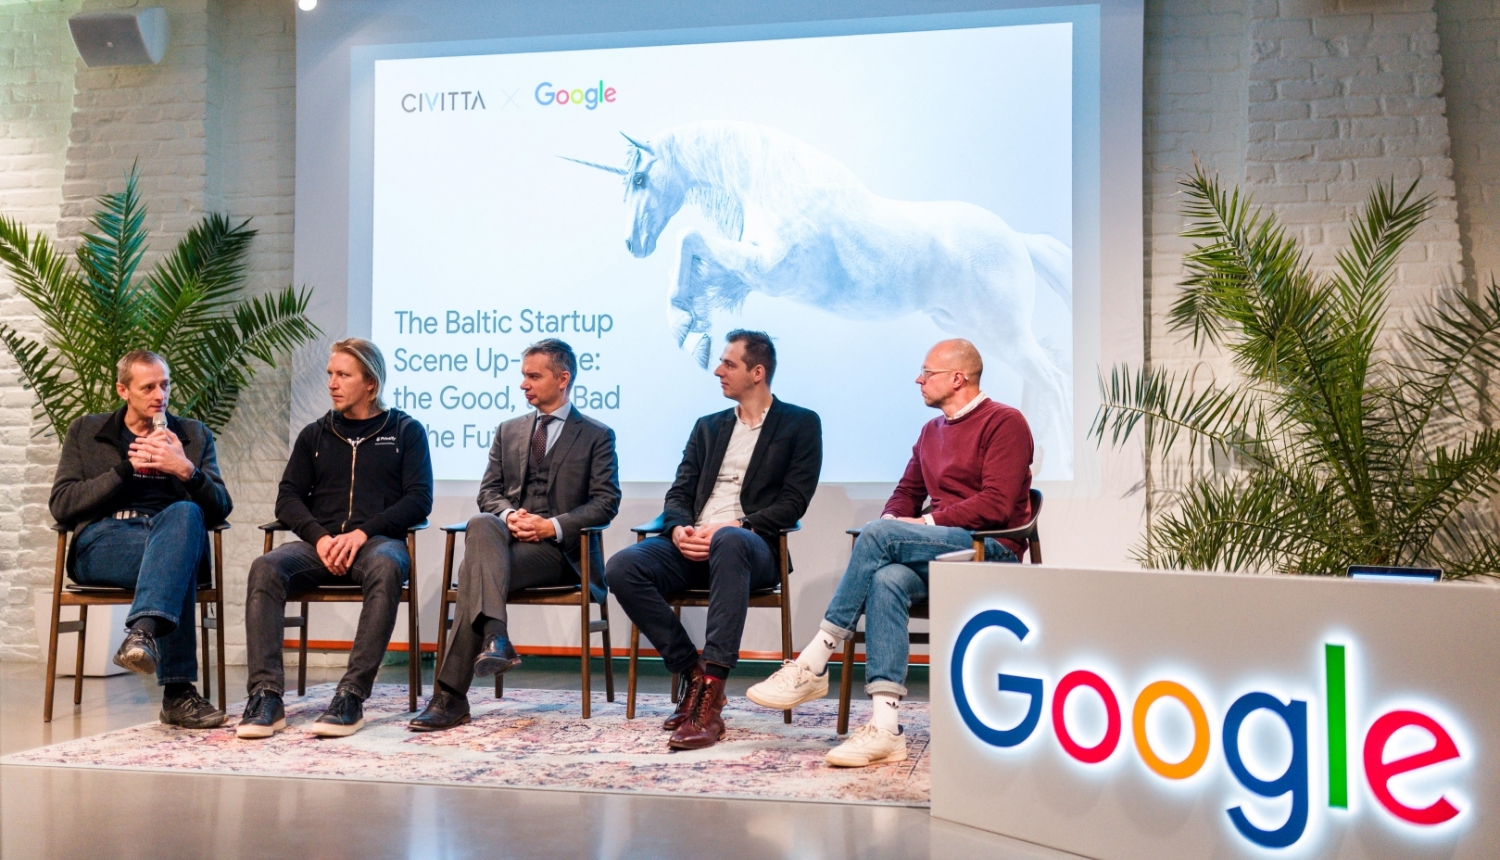 vīrieši sēž uz krēsliem uz skatuves un sarunājas. priekšpusē Google logo.